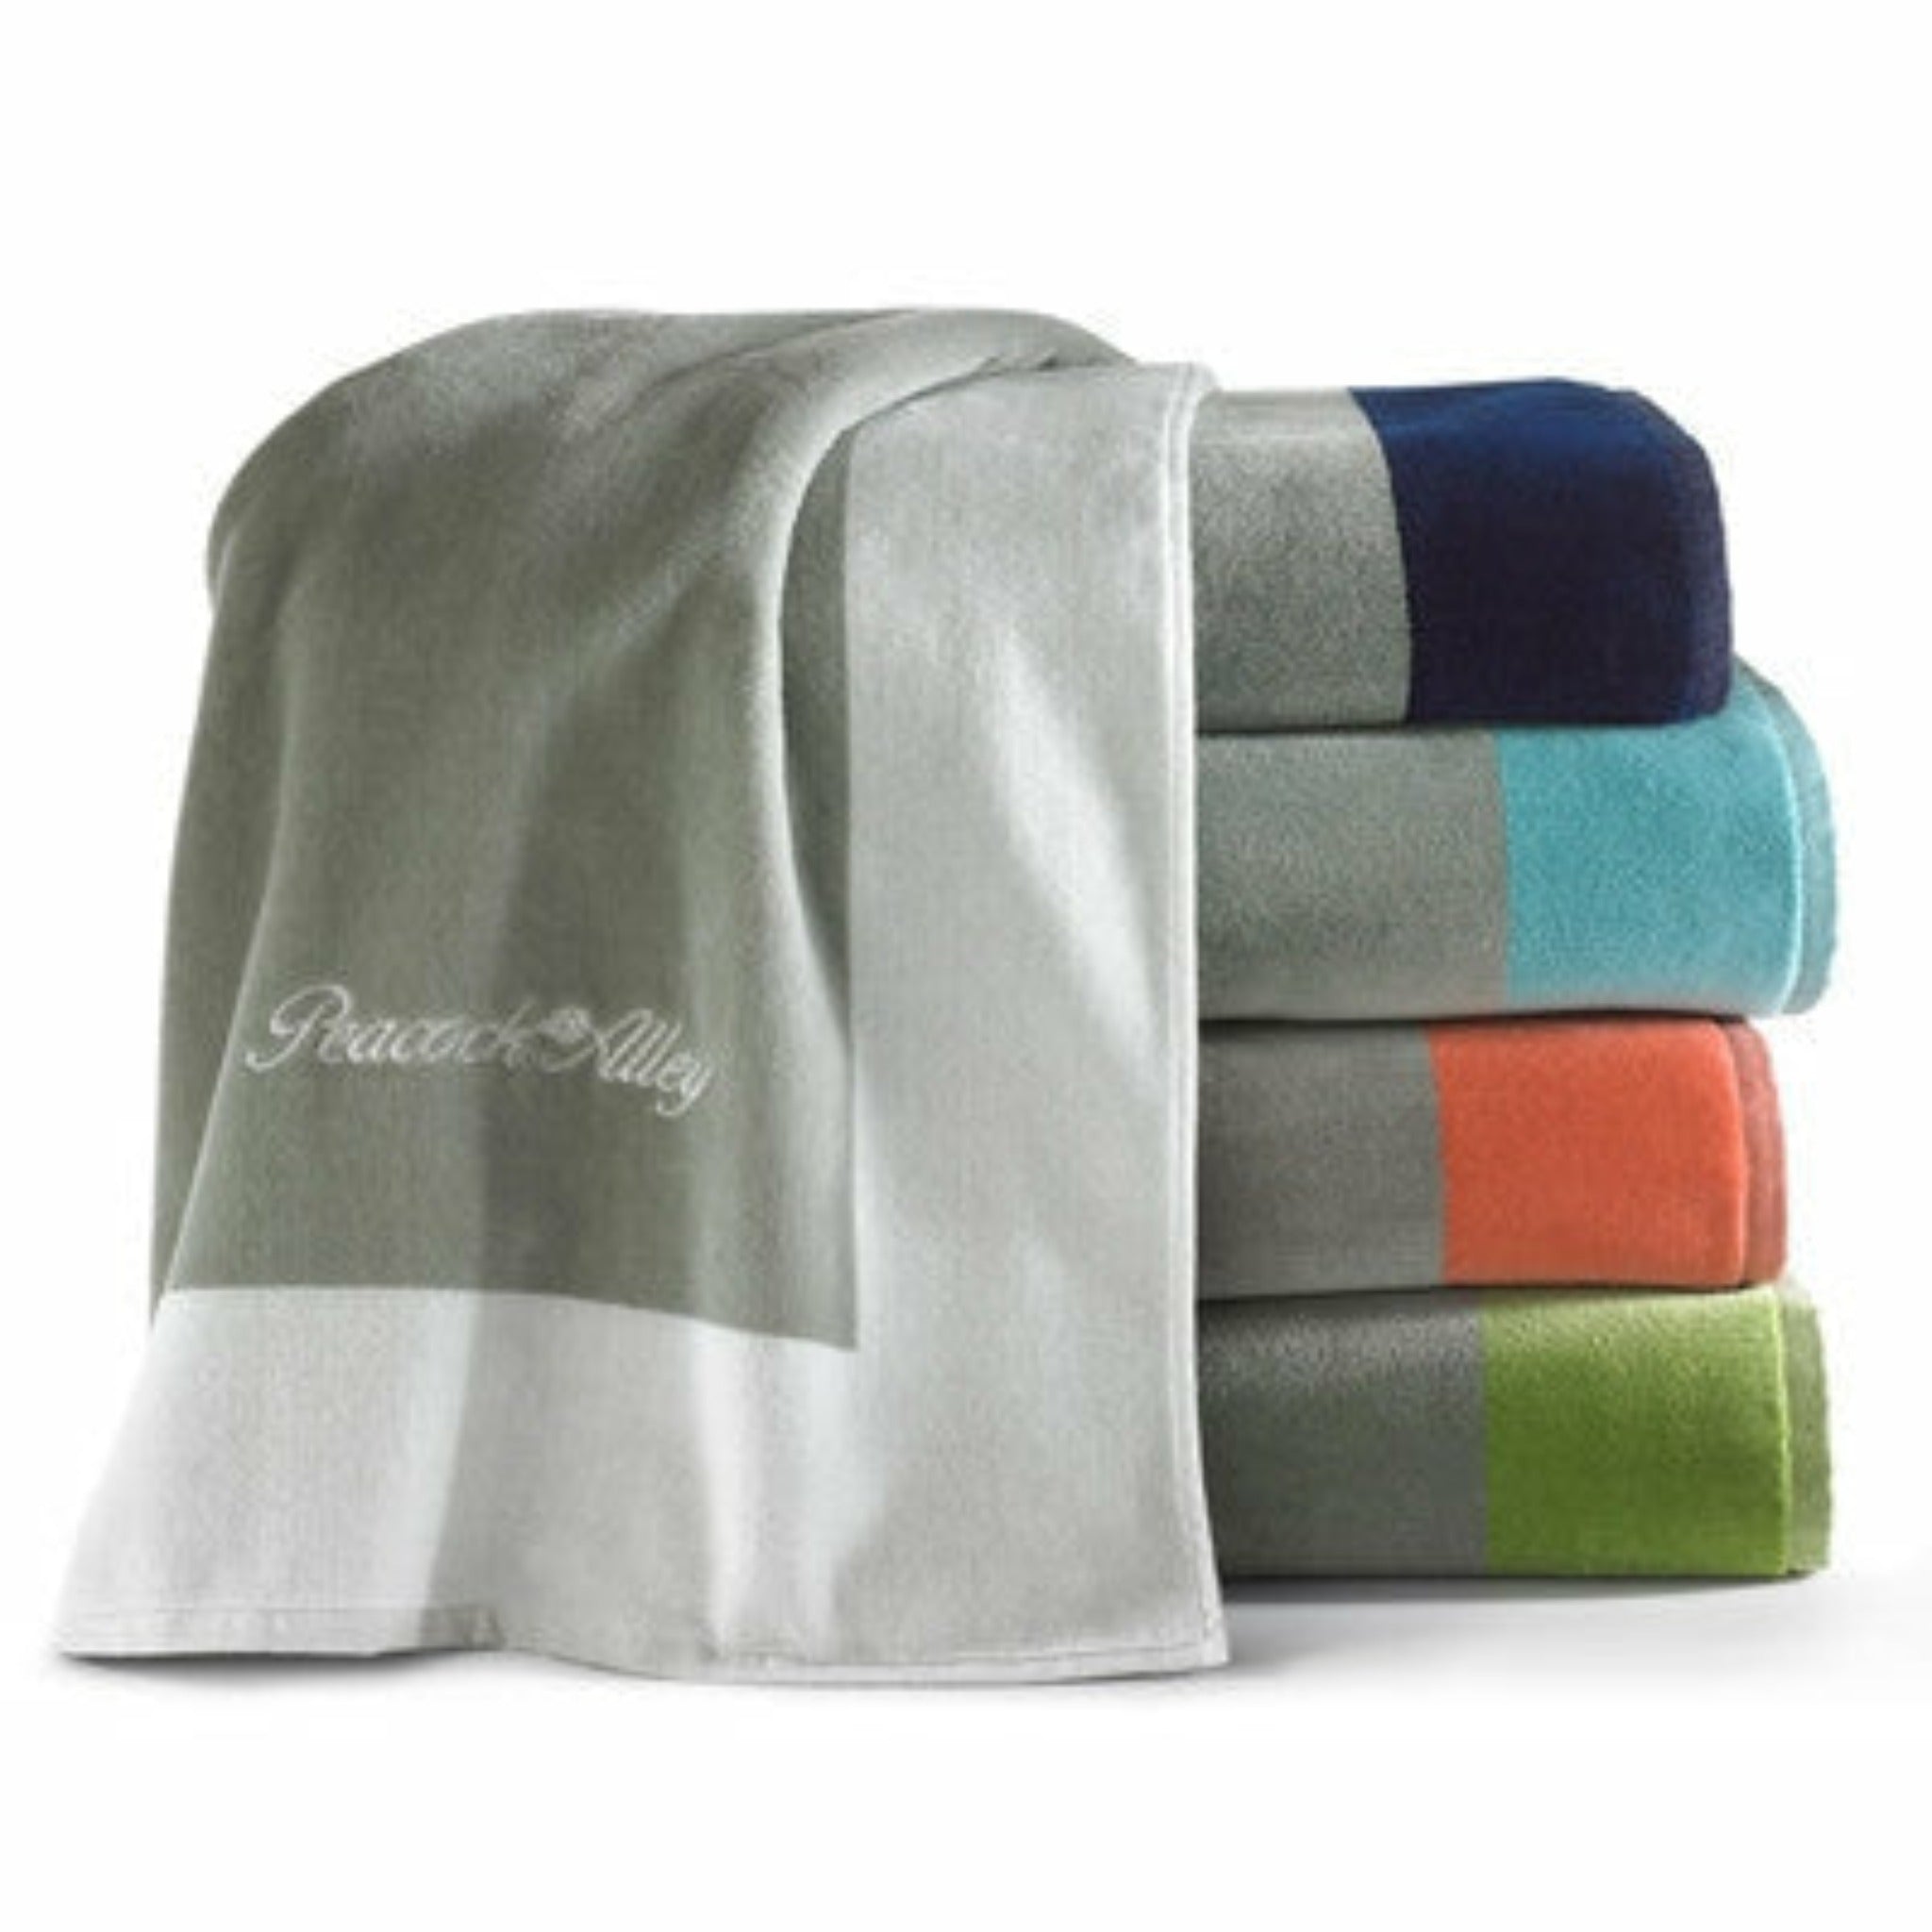 https://flandb.com/cdn/shop/products/Peacock_Alley_Soleil_Beach_Towels_-_Main_34b091a9-1bb2-416f-b57b-f00505f15c6f.jpg?v=1667539648